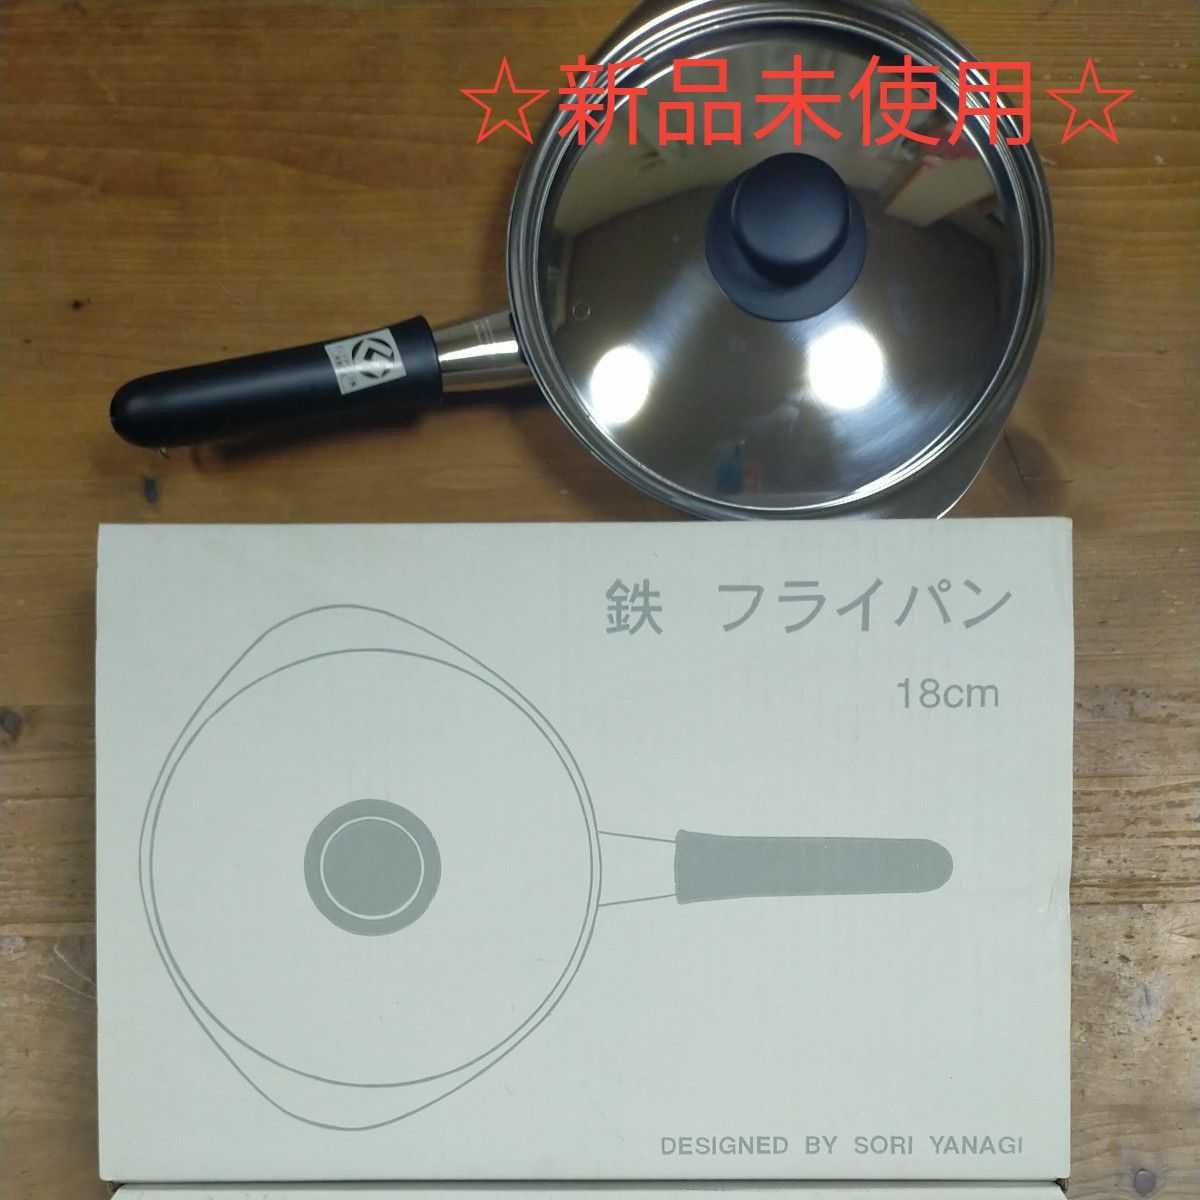 ☆新品未使用☆ 柳宗理 鉄フライパン Sori Yanagi 18cm 蓋付き 調理器具